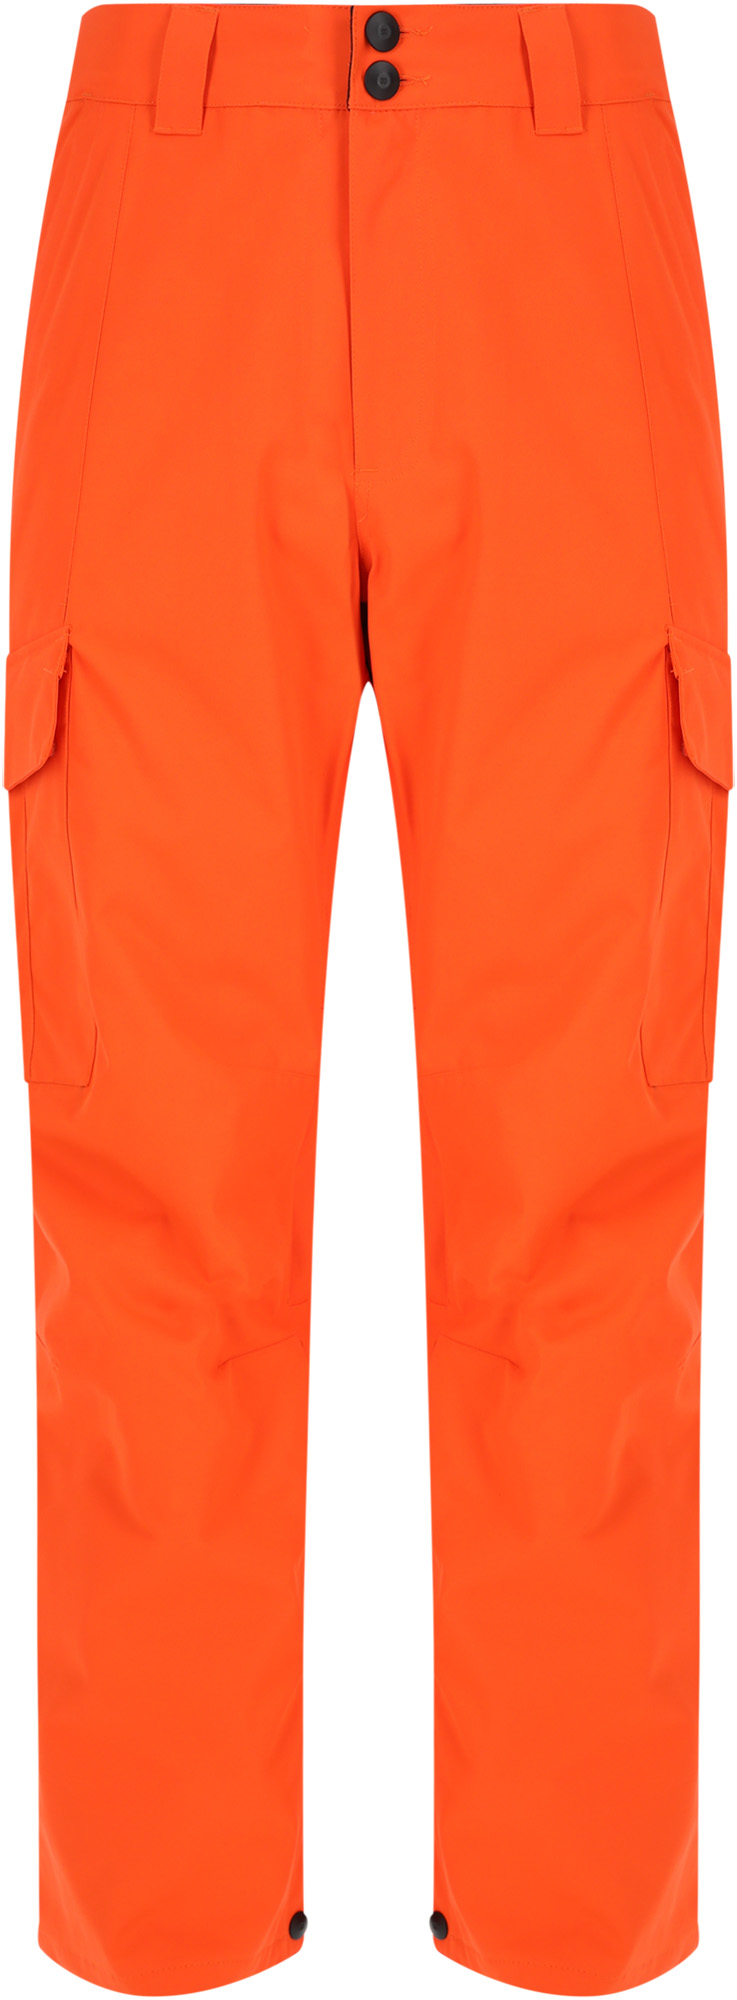 Спортивные брюки DC Banshee orangeade, M INT